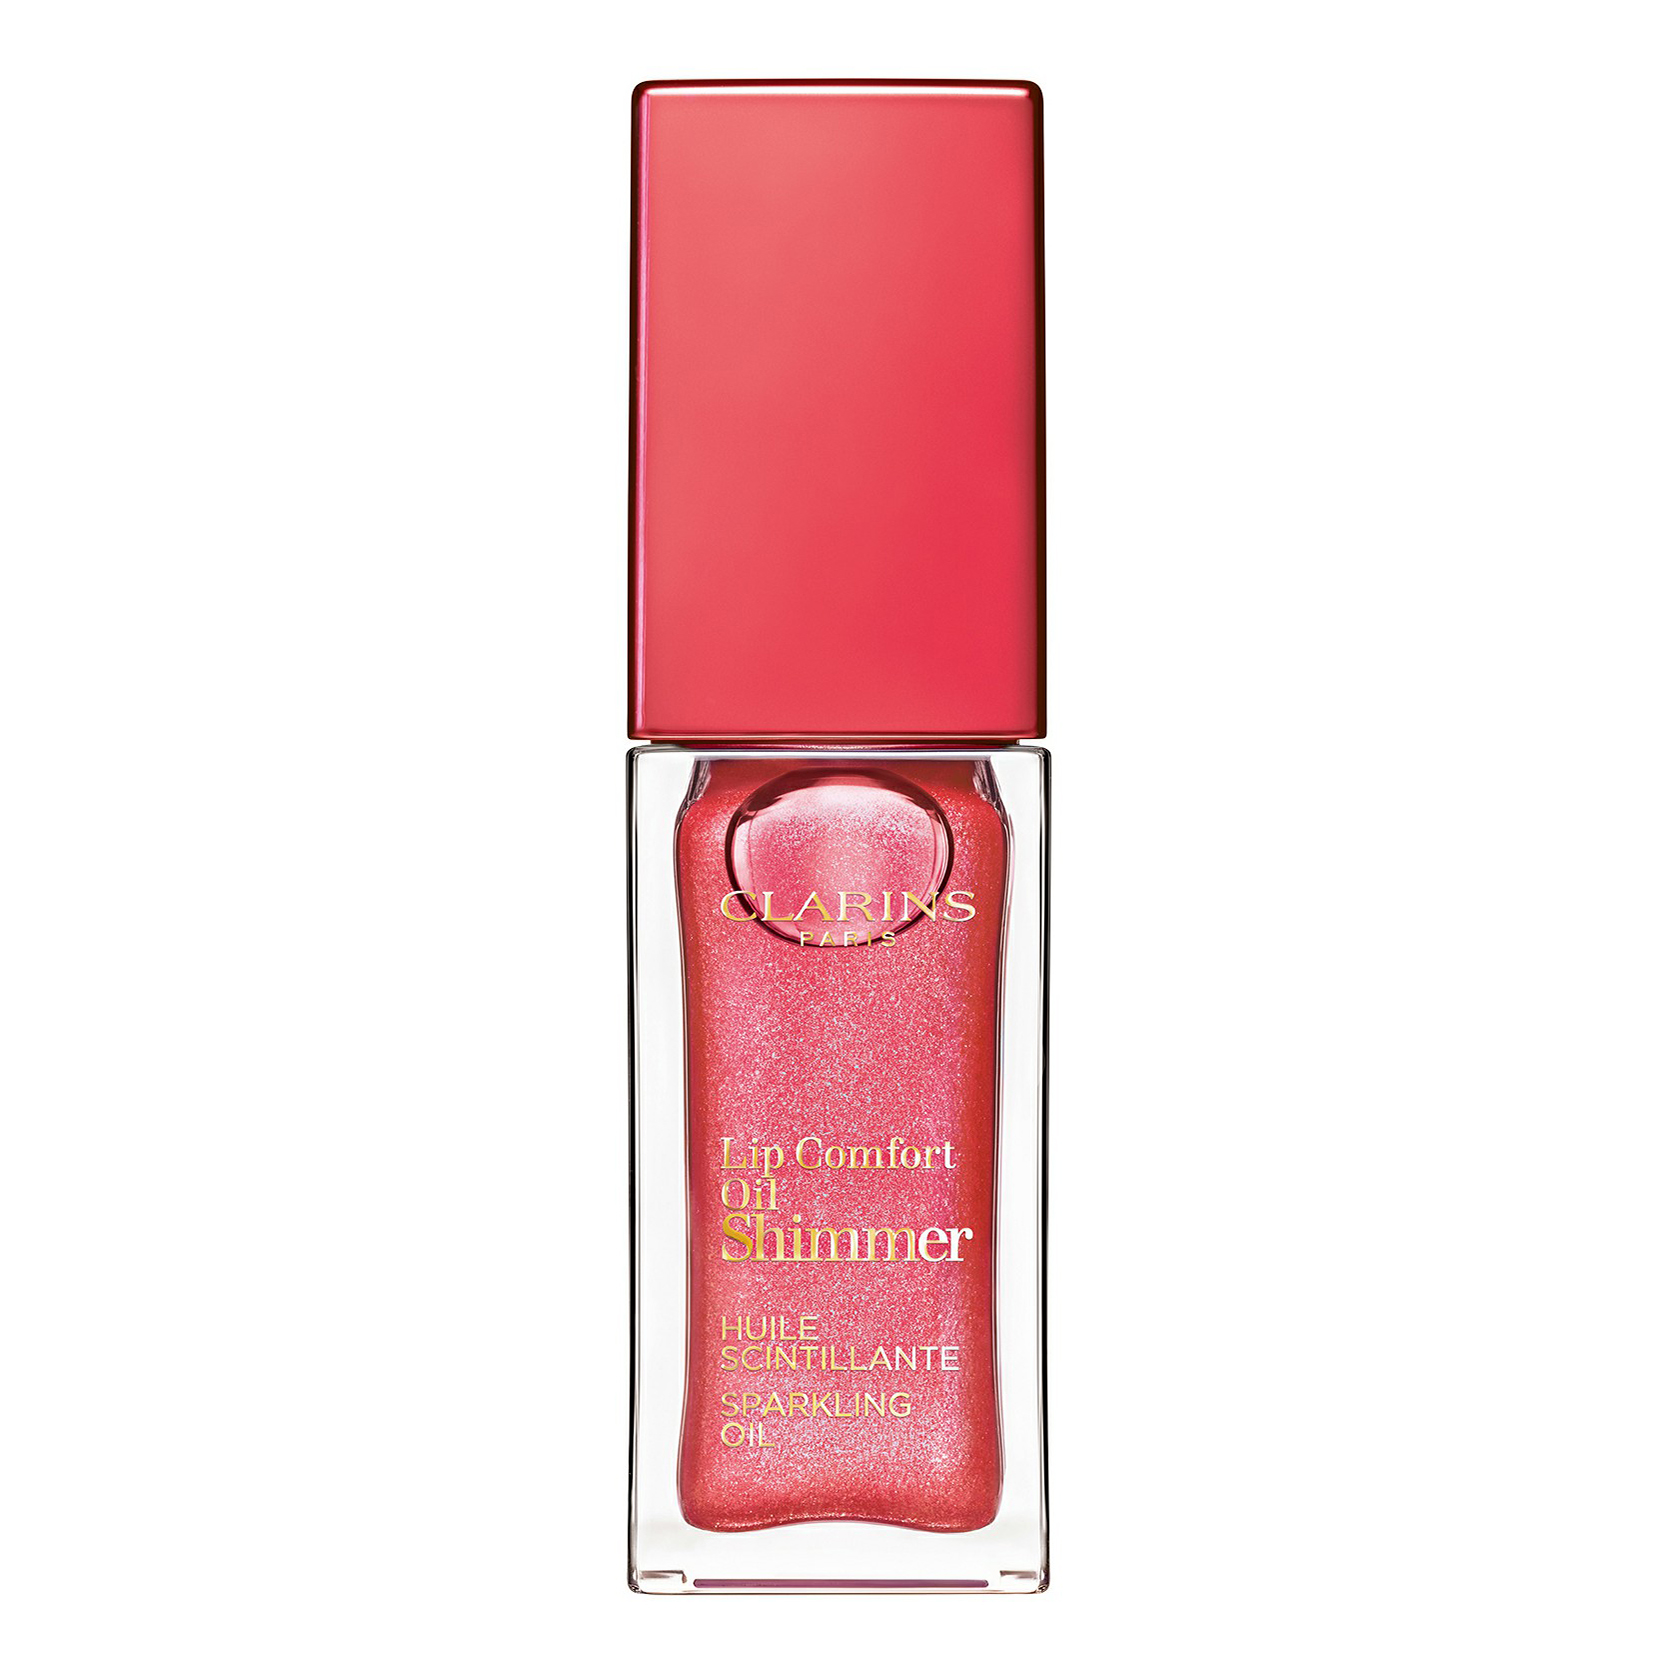 Масло для губ Clarins Lip Comfort Oil Shimmer мерцающее, 5 pretty in pink, 7 мл